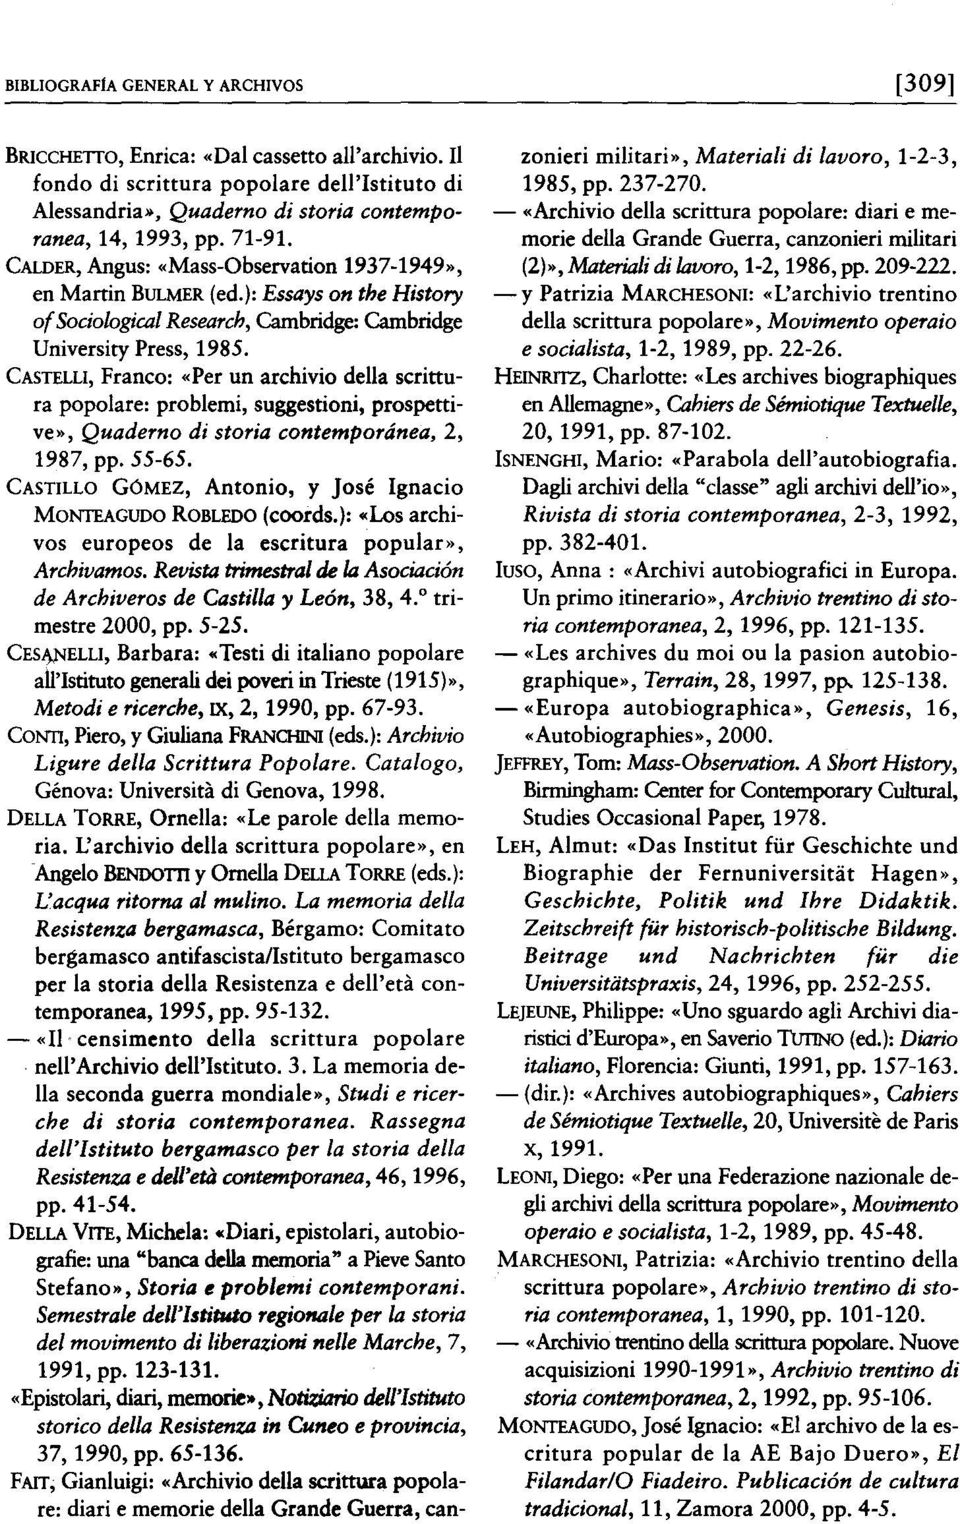 CASTELLI, Franco: «Per un archivio della scrittura popolare: problemi, suggestioni, prospettive», Quaderno di storia contemporánea, 2, 1987, pp. 55-65.